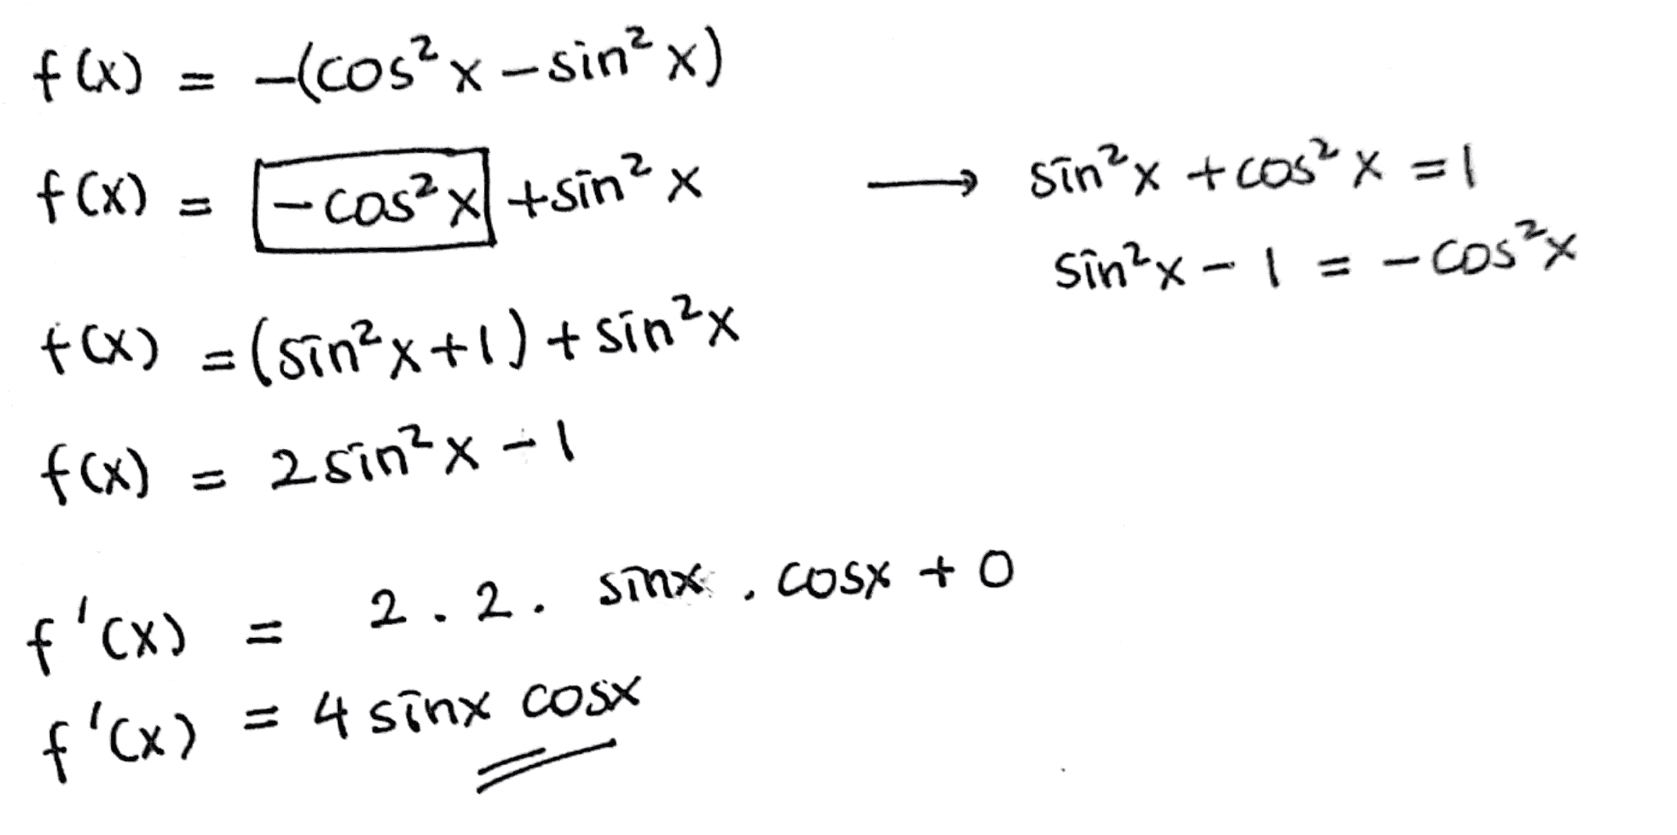 f() +x) = ) -(cos?x-sin?x) f(x) = fcas?x+sin?x - → sin²x + cos²x = 1 sin²x-1=-cos²x f(x) = (sin2x+1)+sin?x f(x) a sin²x-1 2.2. Sinx COSX + 0 f'cx) f'cx) + sinx CON 